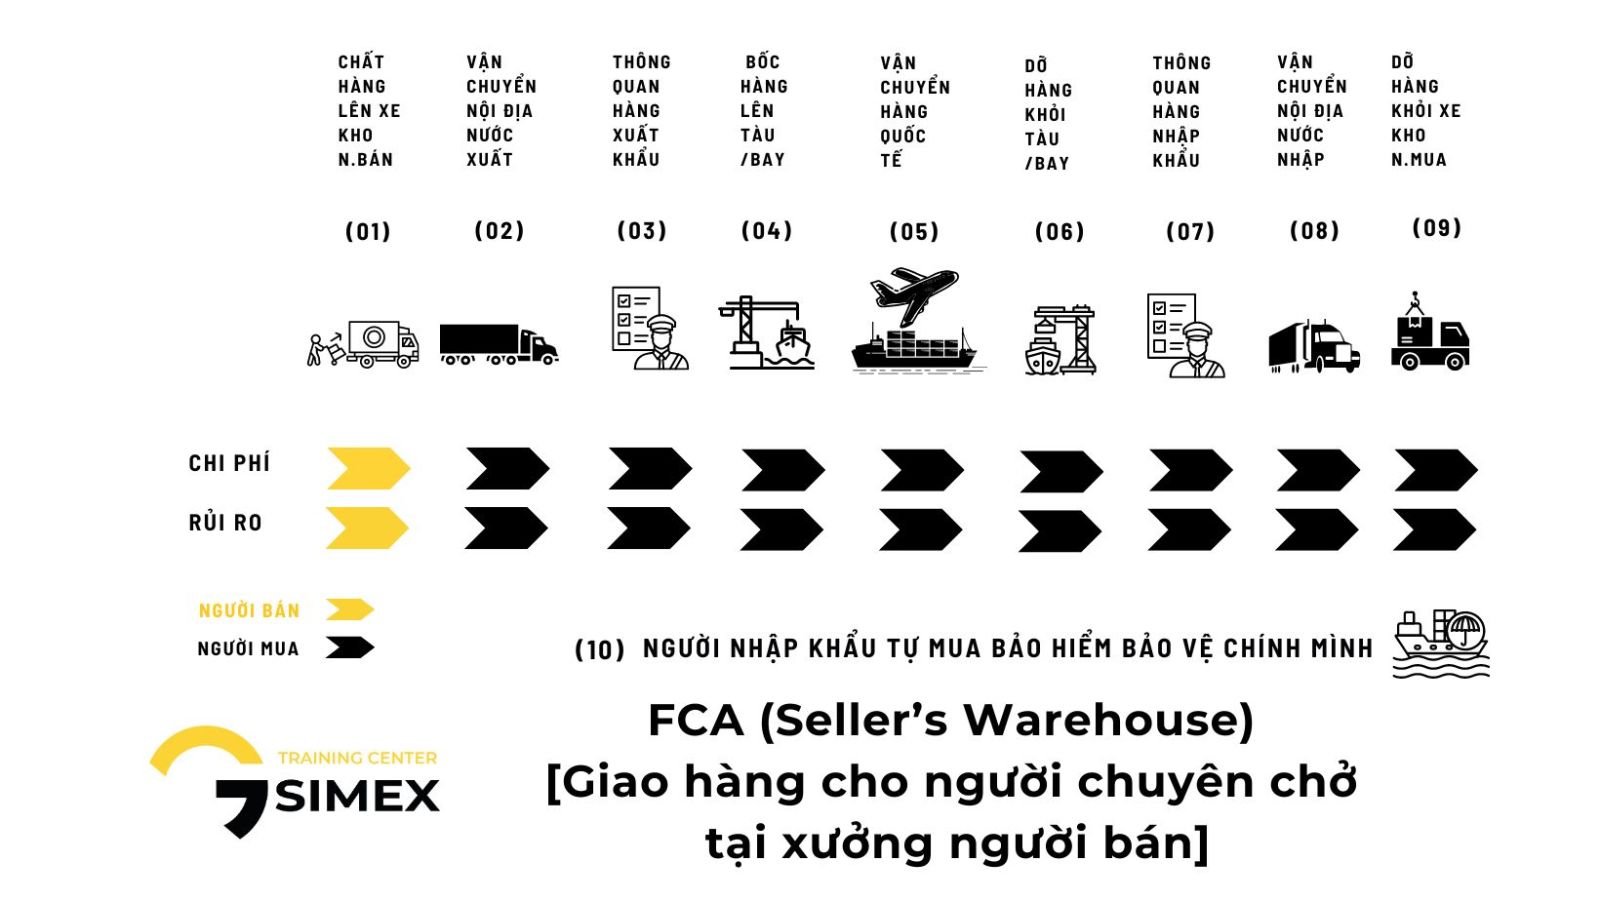 FCA (Seller’s Warehouse) [Giao hàng cho người chuyên chở tại xưởng người bán]